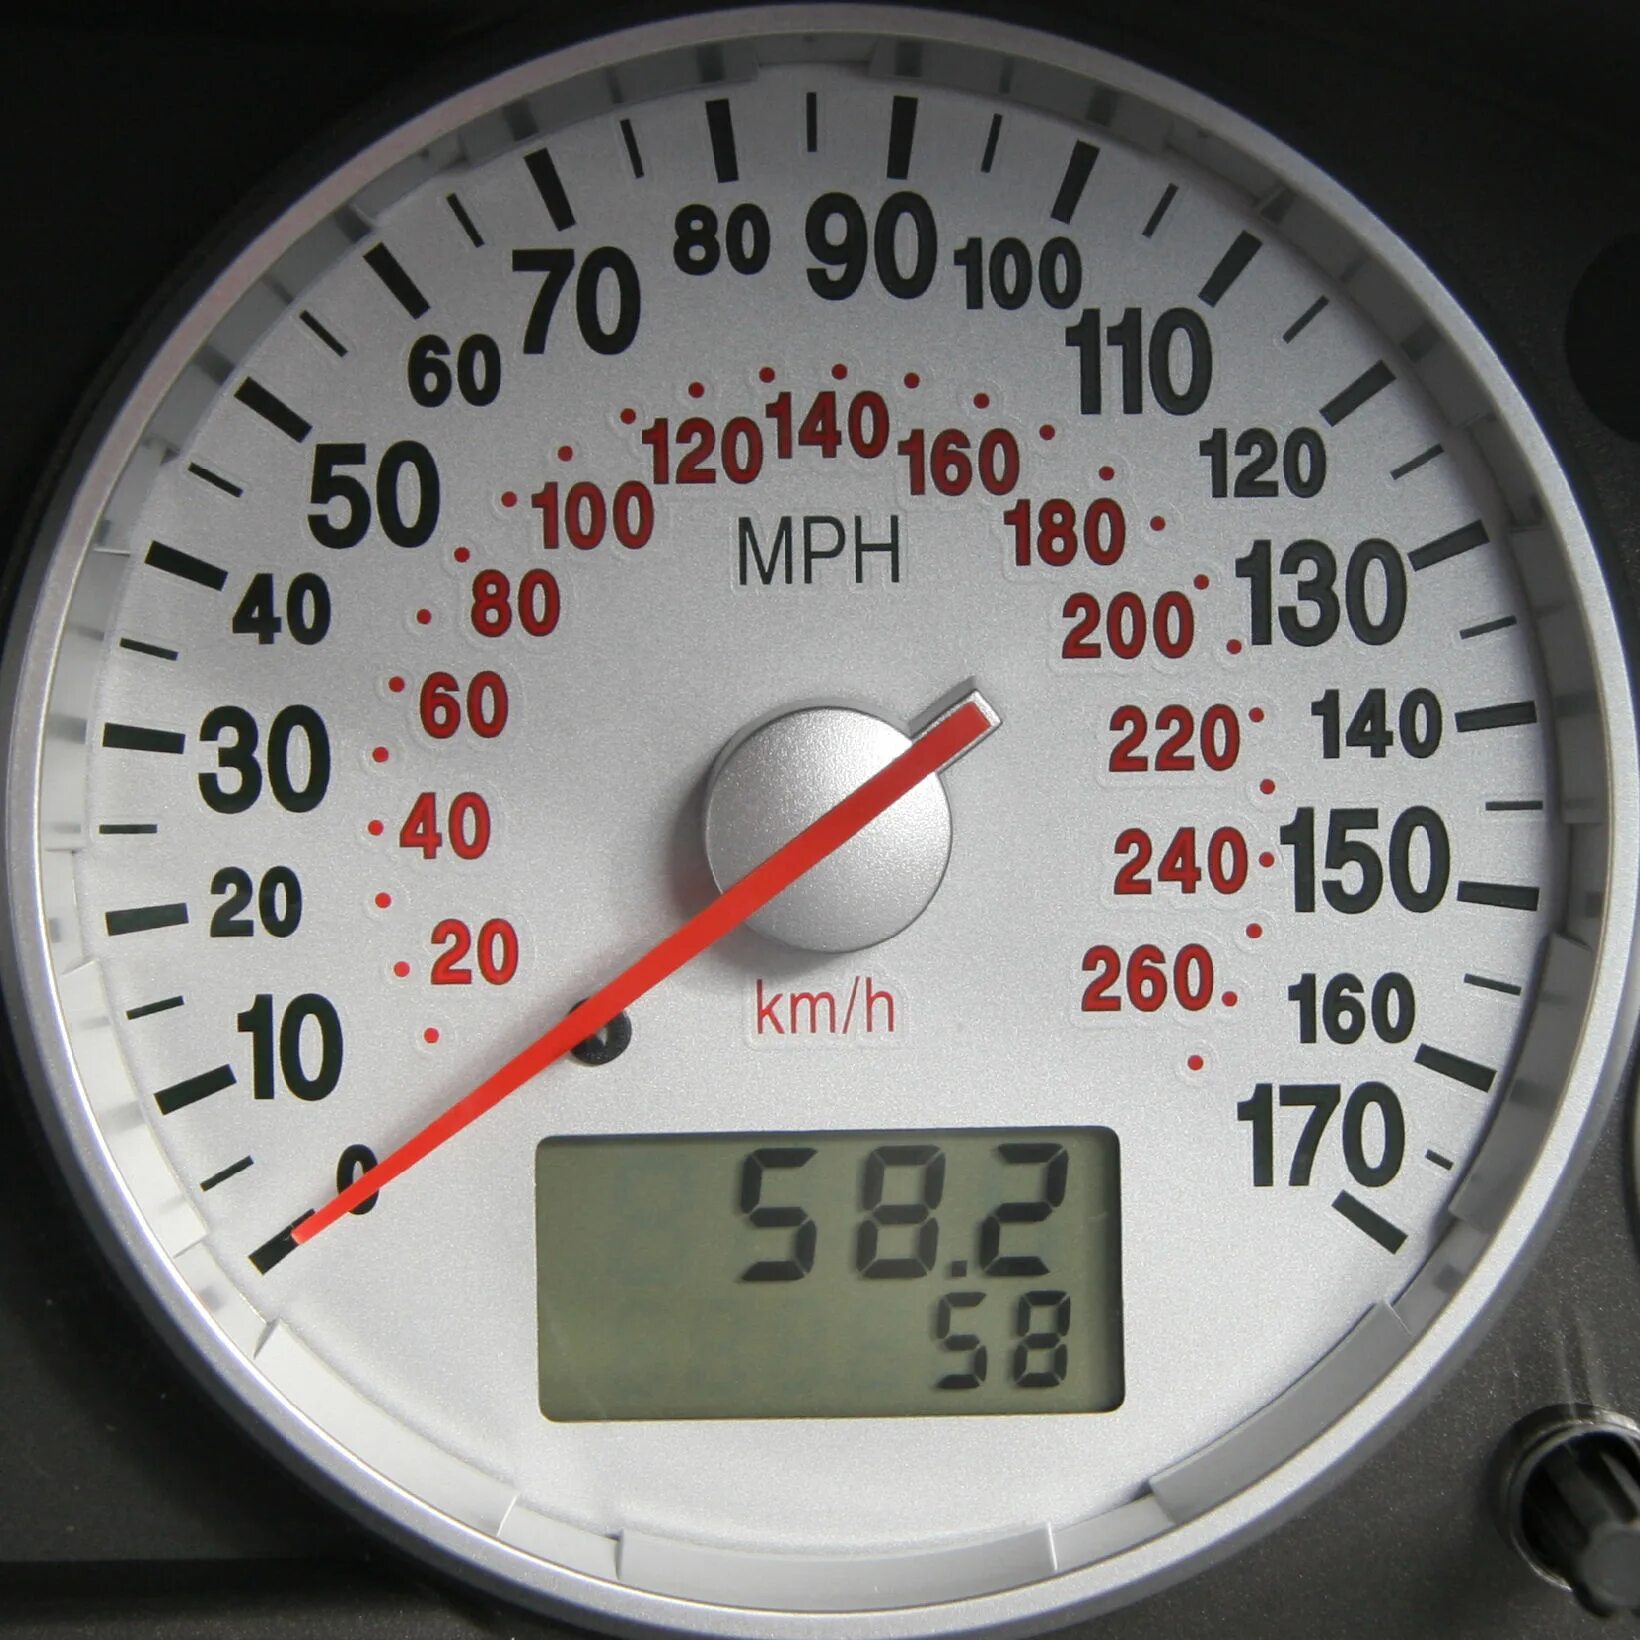 S 0 150. GPS спидометр для автомобиля 100 км/ч. Спидометр миль в час. Спидометр мили и километры. Американский спидометр.